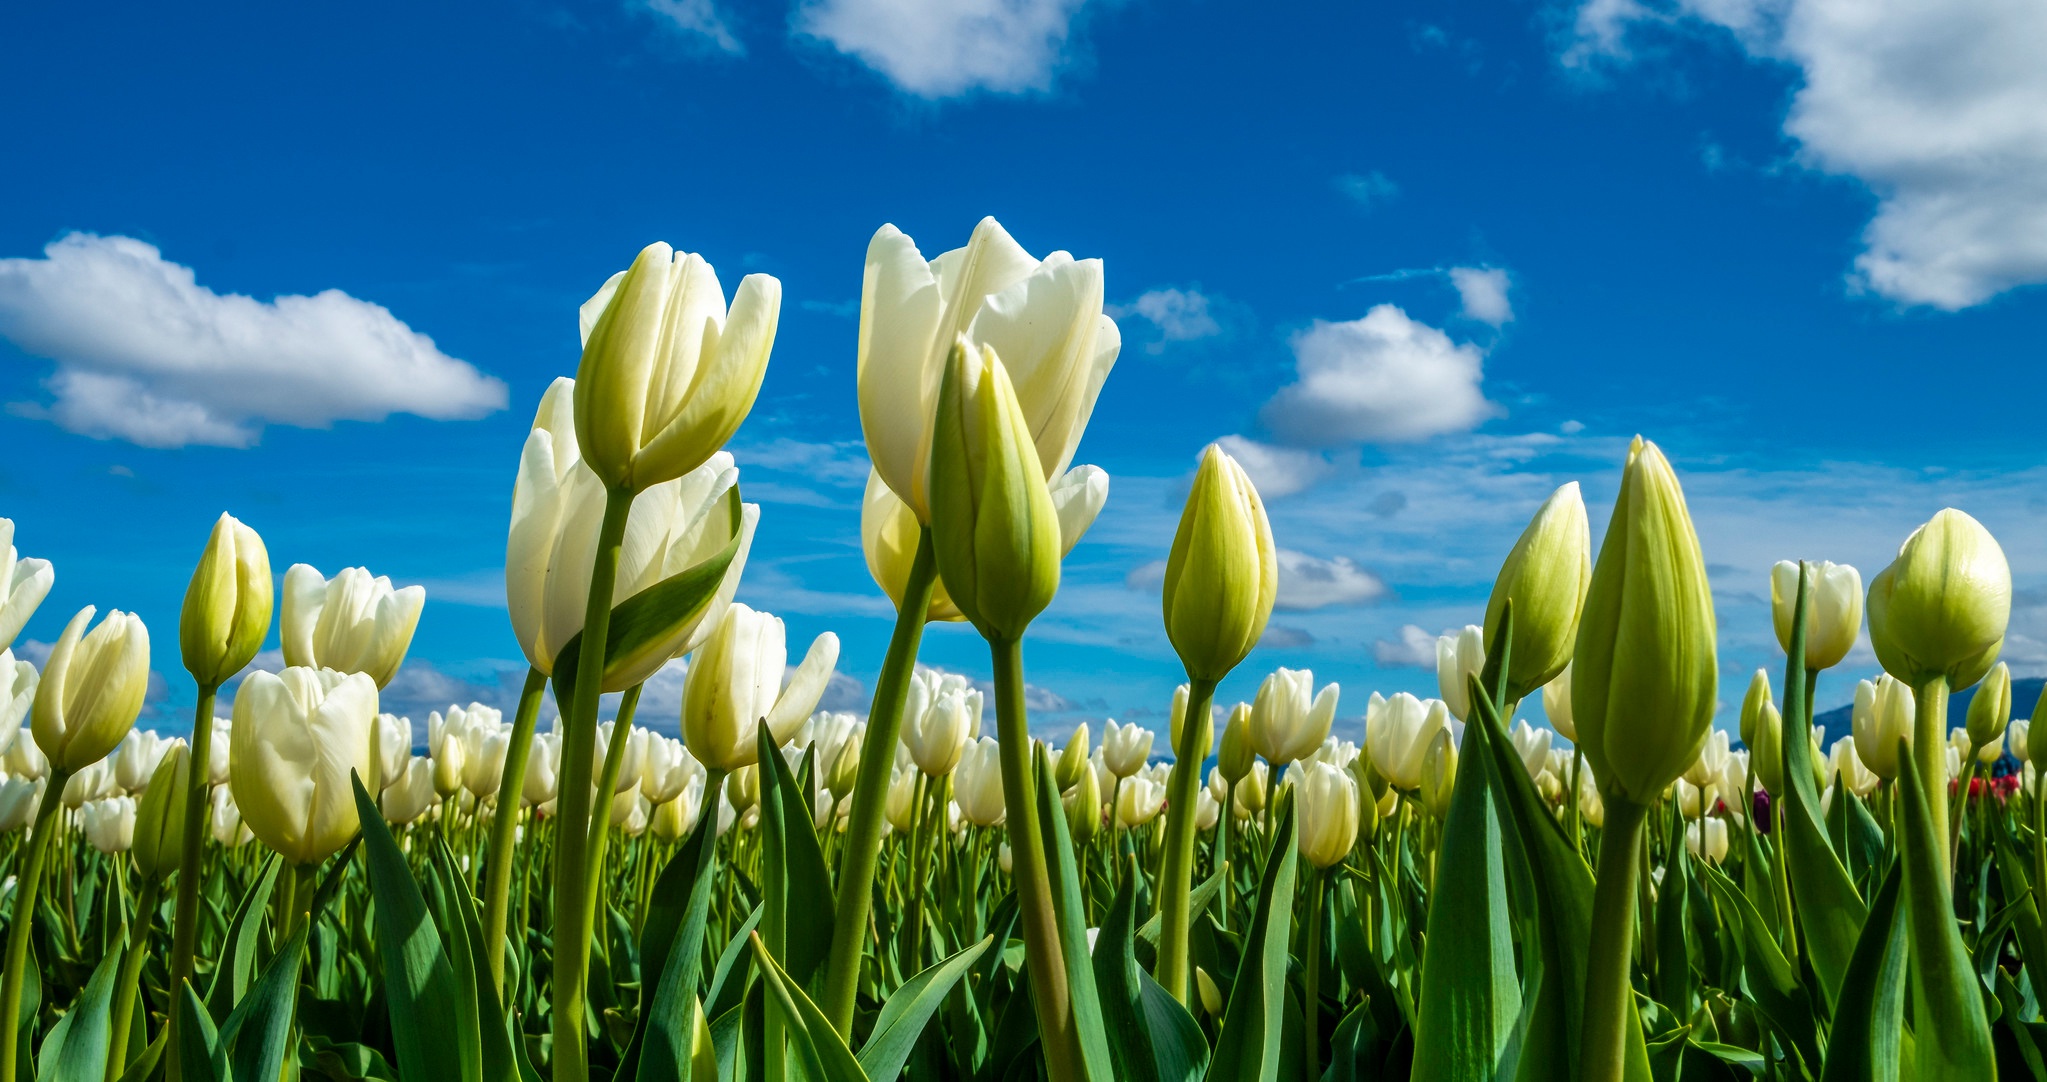 Descarga gratuita de fondo de pantalla para móvil de Naturaleza, Flores, Flor, Tulipán, Flor Blanca, Tierra/naturaleza.